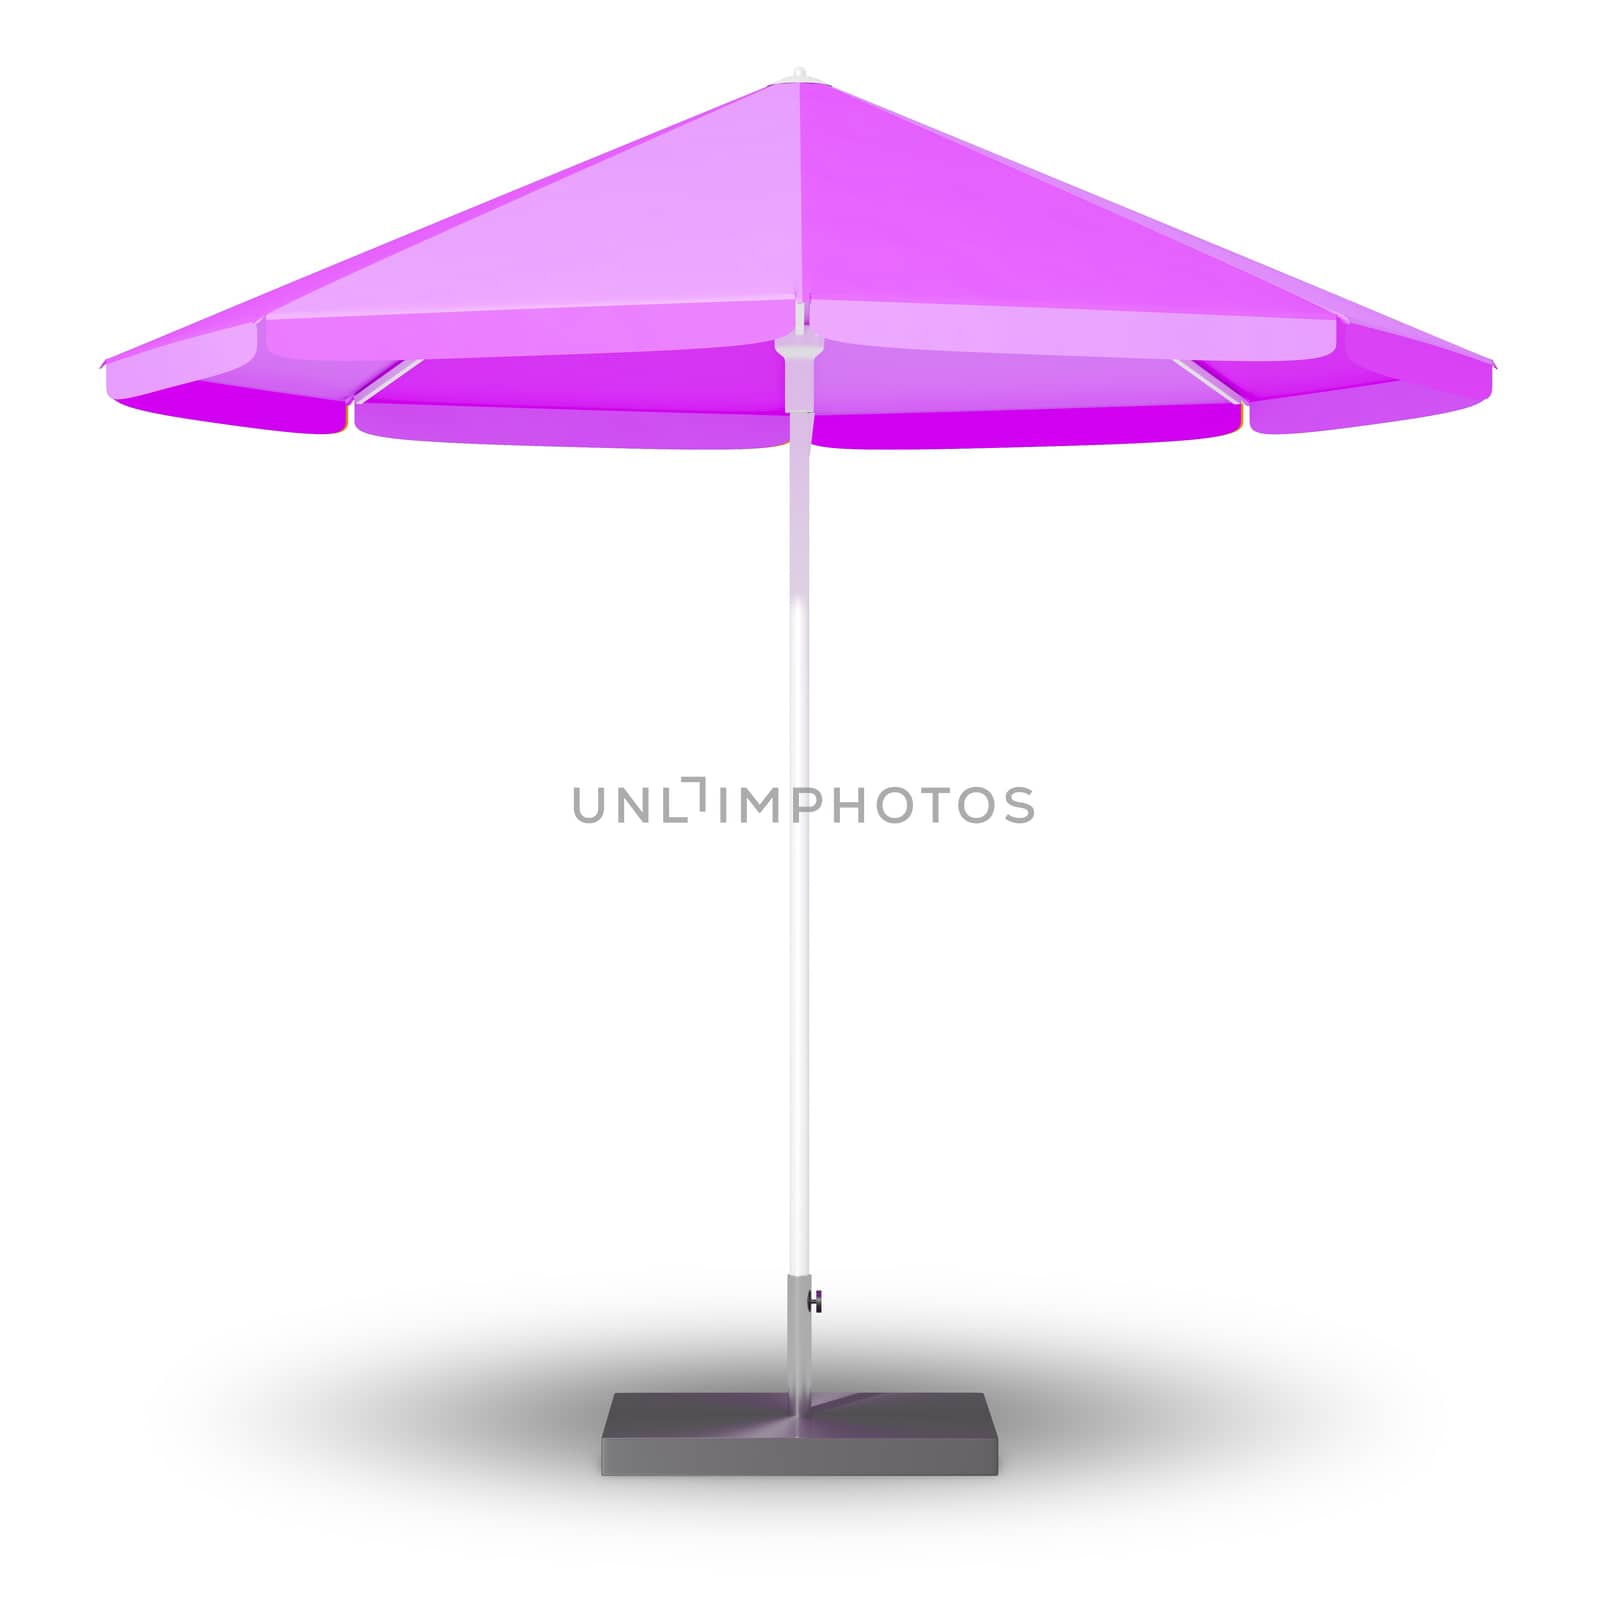 An image of a sun protection umbrella